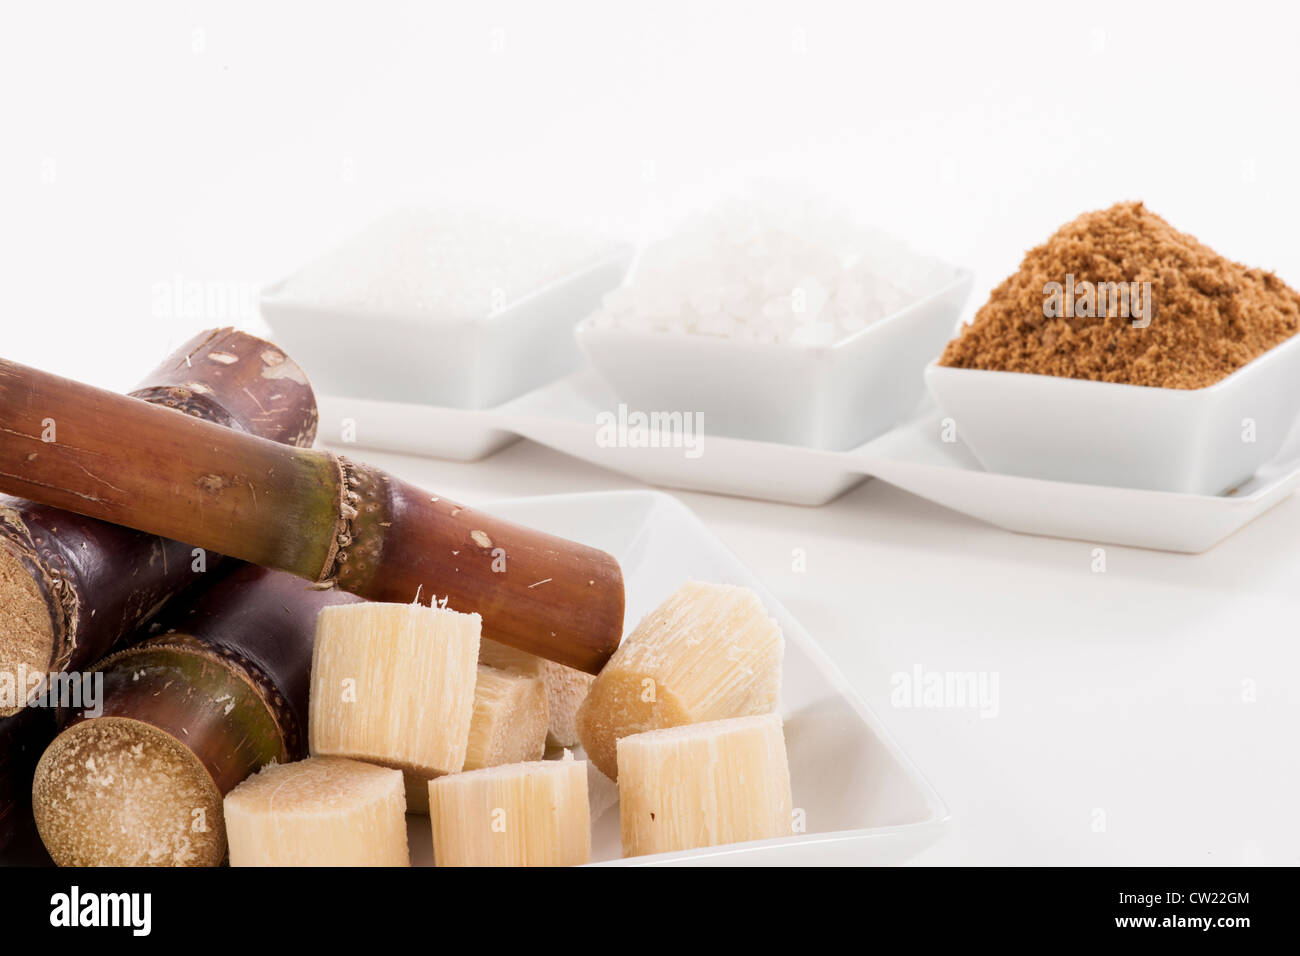 Blanc, Rock, le sucre brun et le sucre de canne dans un bol Banque D'Images